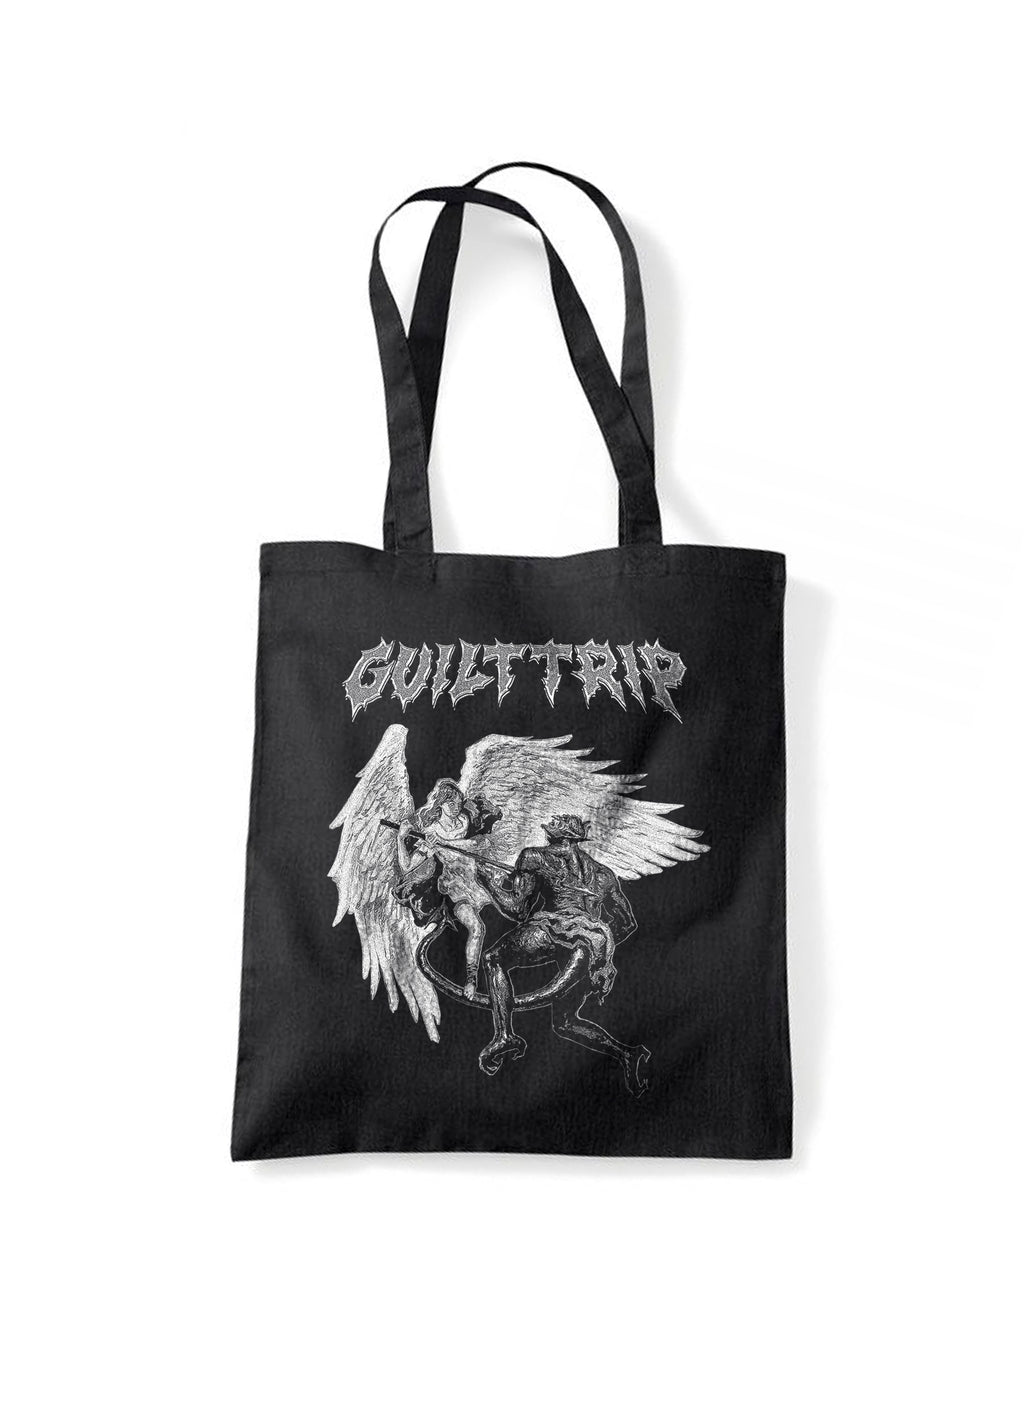 Guilt Trip - Tote Bag